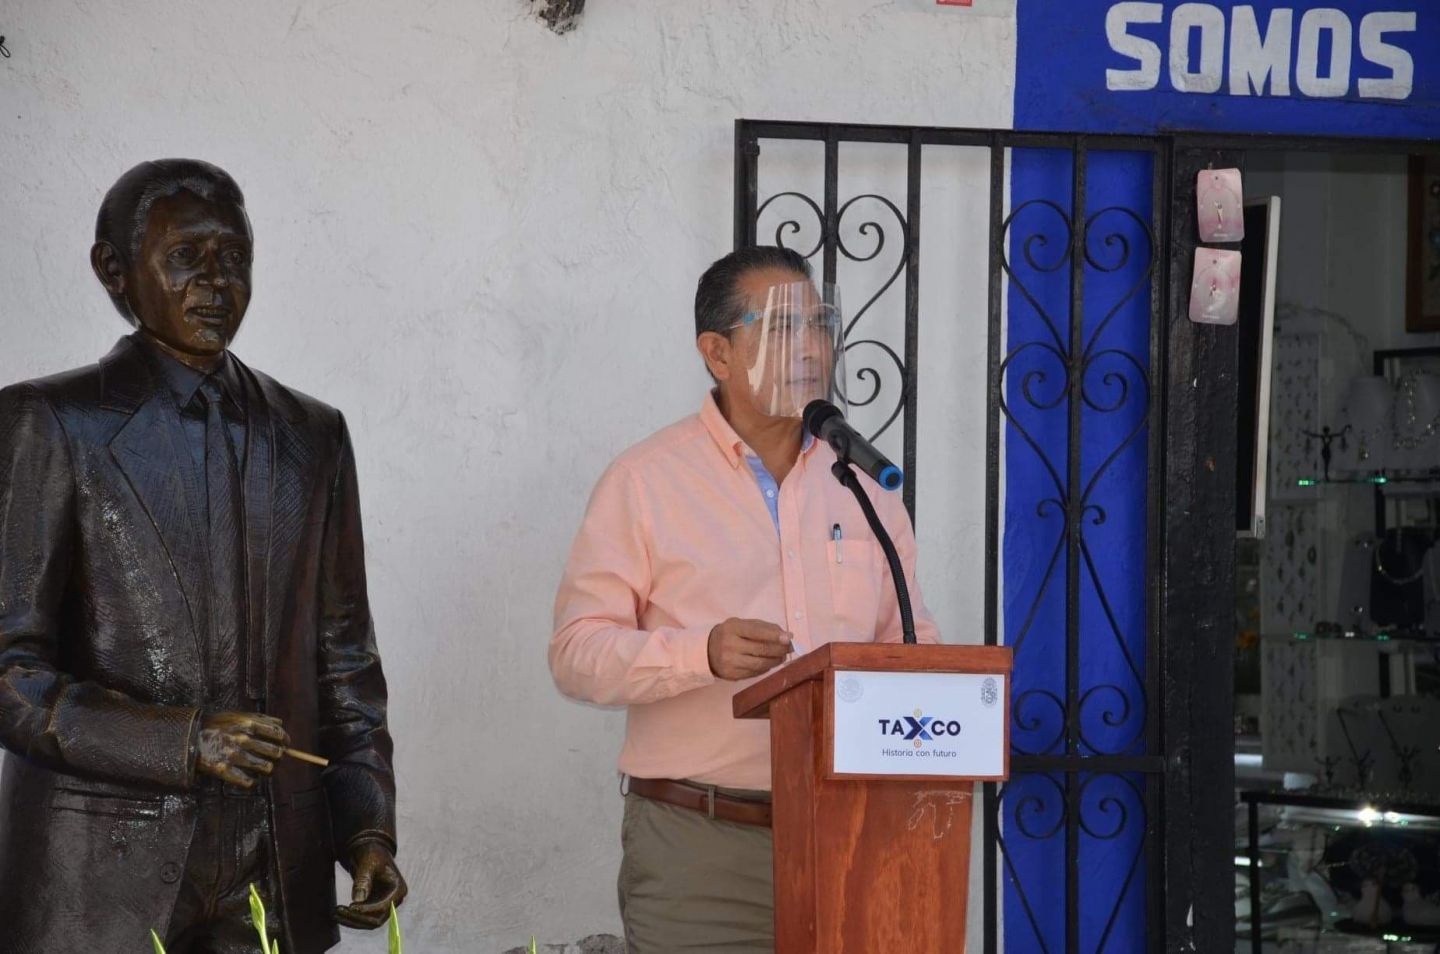 Gobierno de Taxco conmemora el CXI Aniversario del natalicio del cantautor taxqueño ’Raful Krayem Sánchez’.